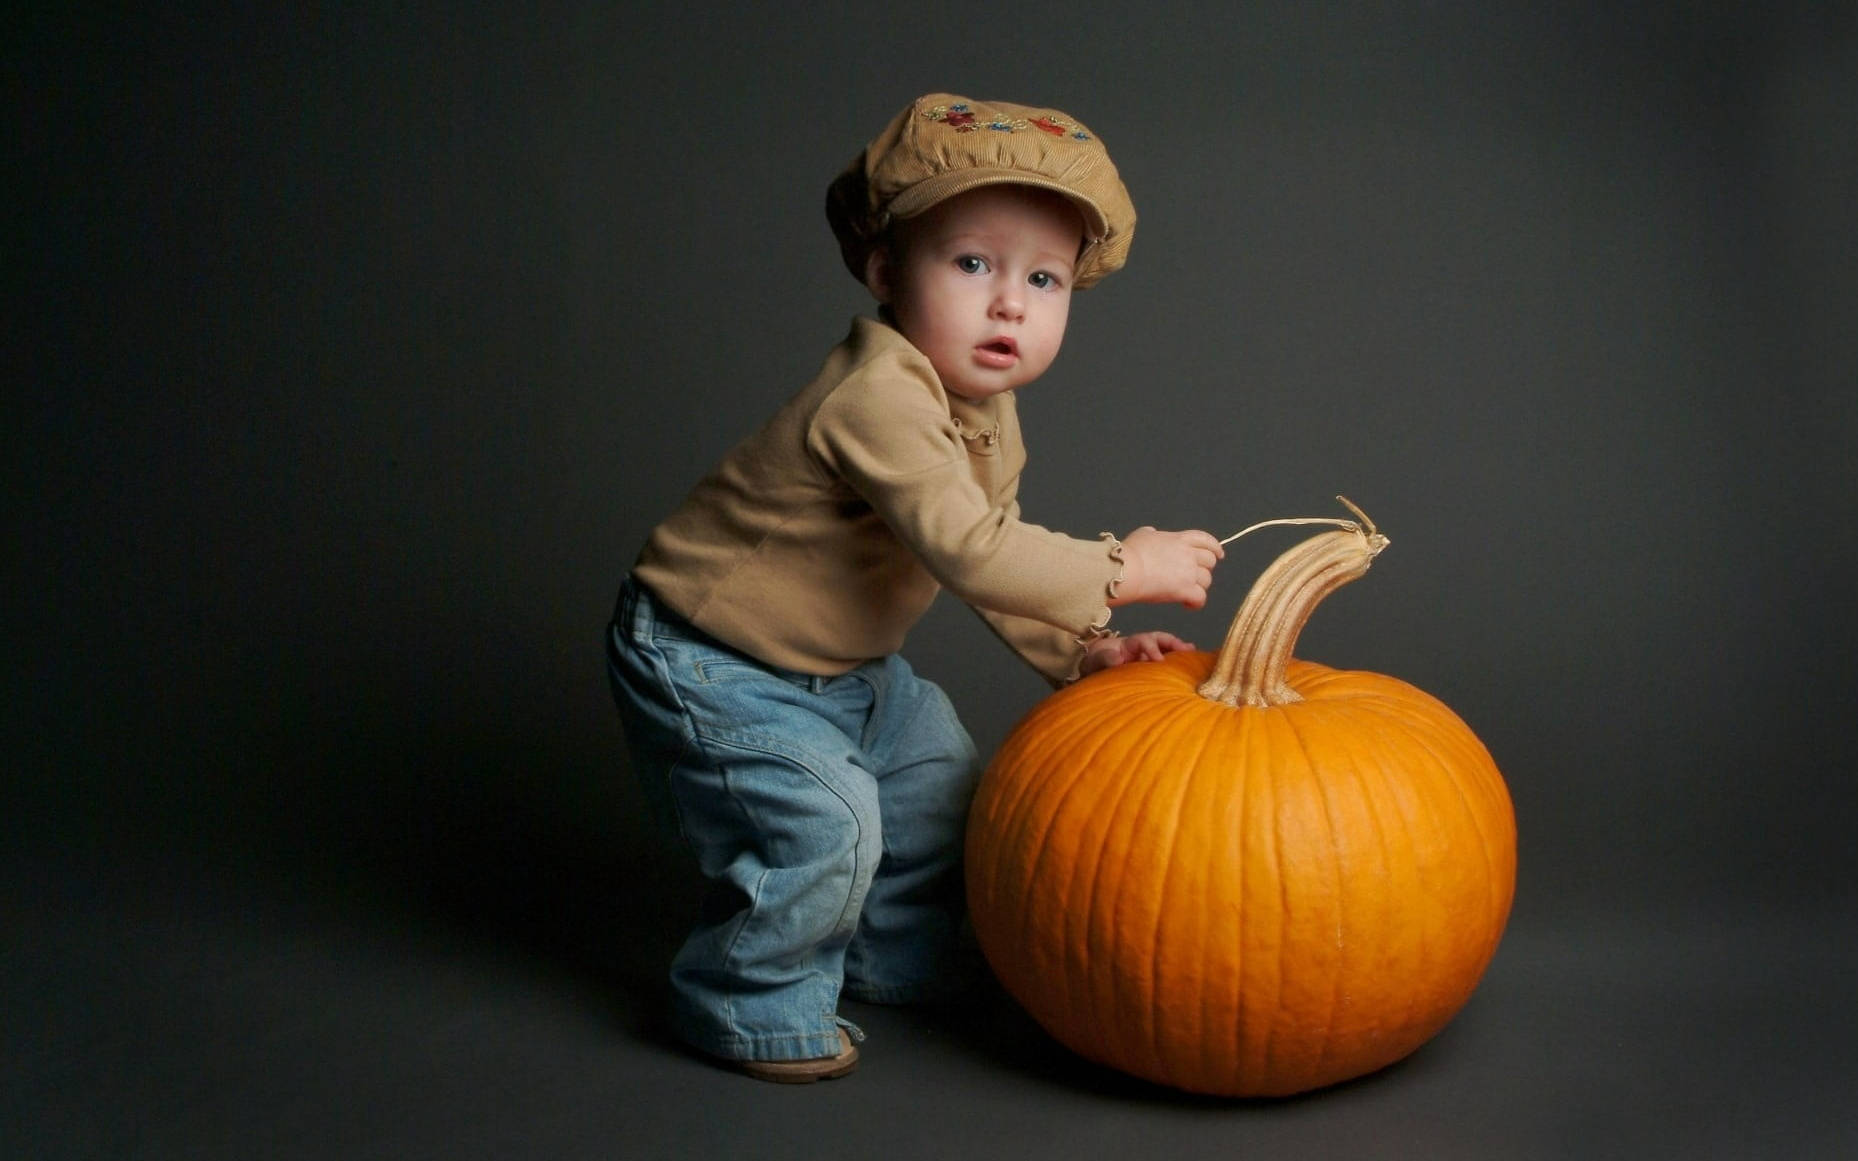 Cute Halloween Toddler Over Pumpkin Background